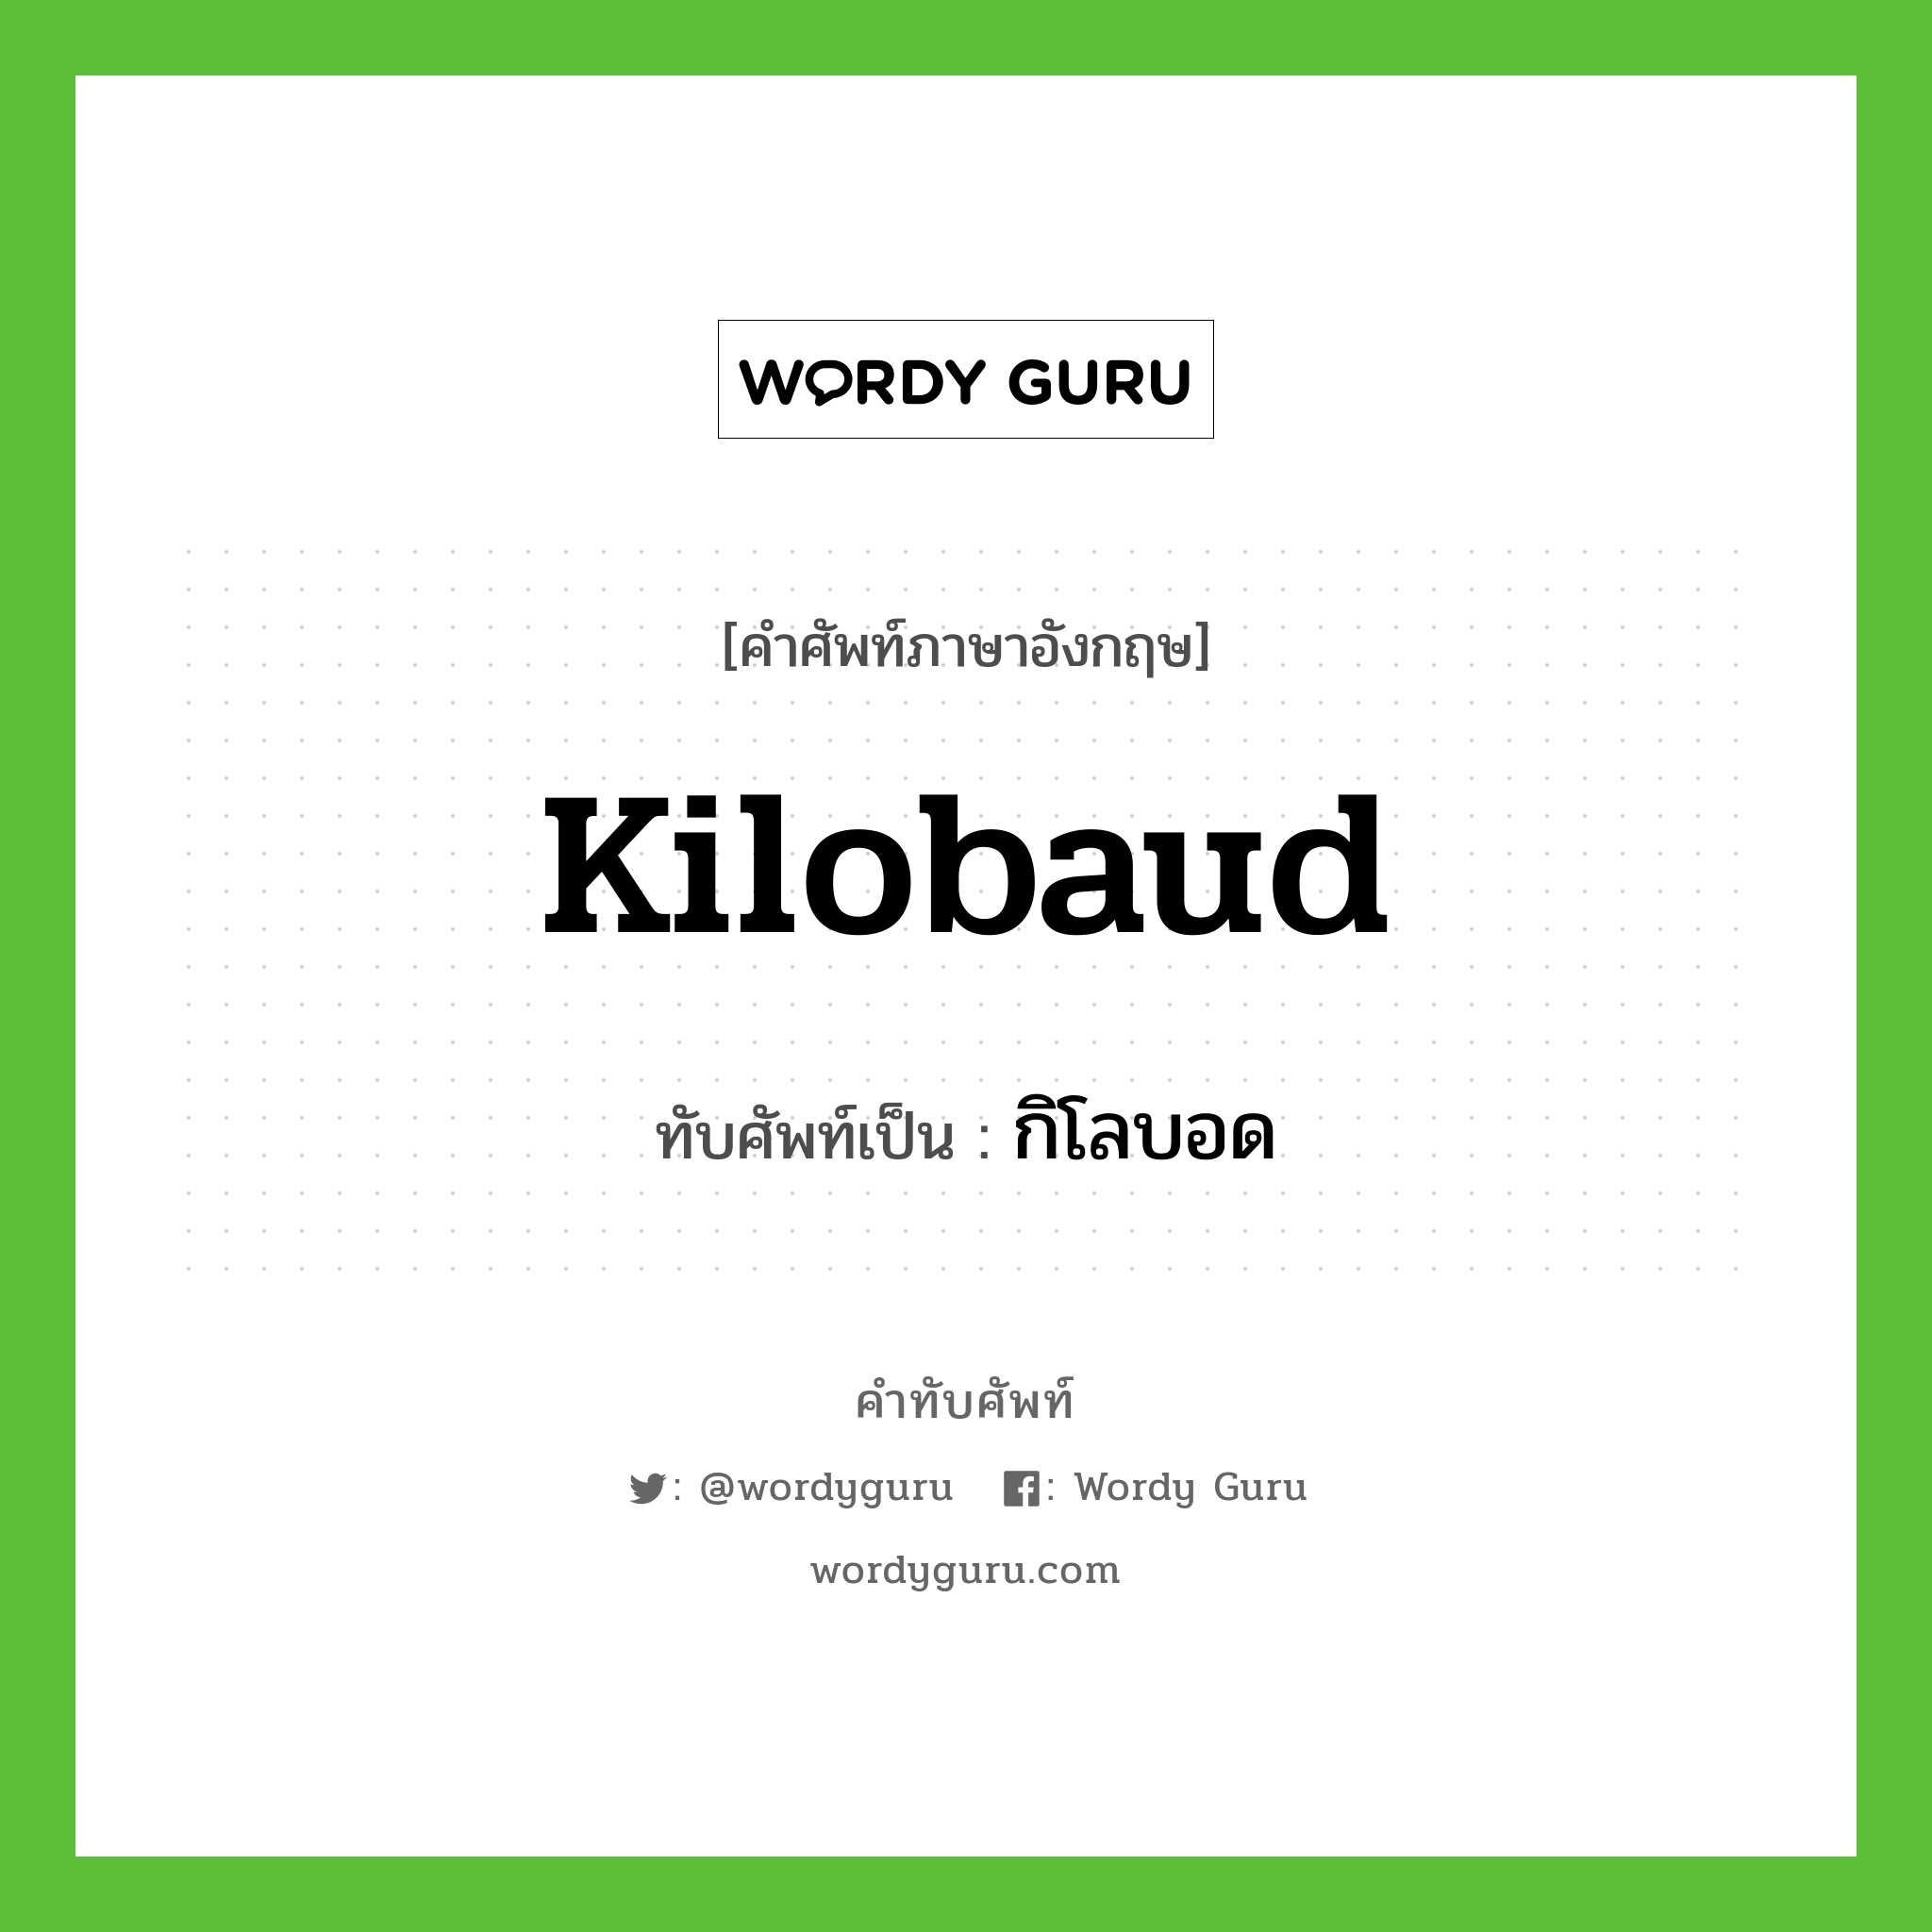 kilobaud เขียนเป็นคำไทยว่าอะไร?, คำศัพท์ภาษาอังกฤษ kilobaud ทับศัพท์เป็น กิโลบอด